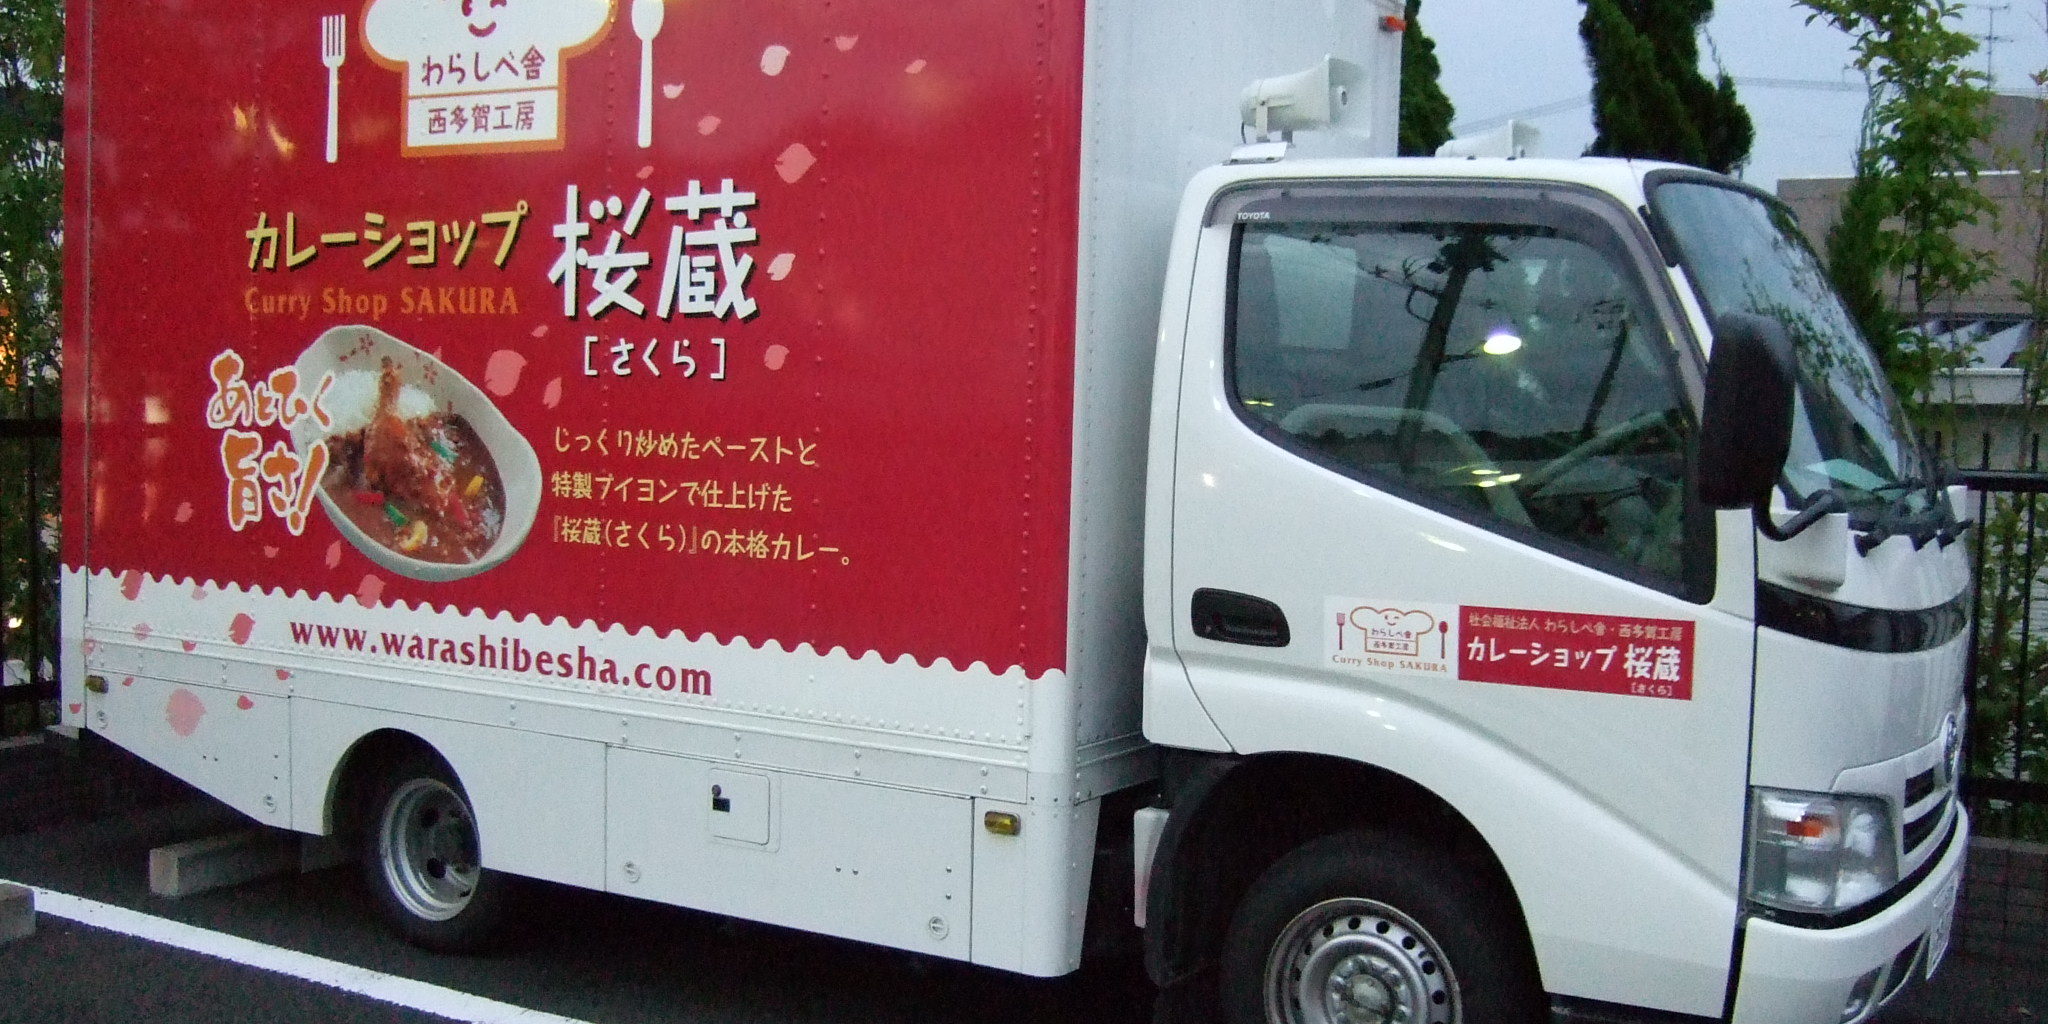 カレーショップ桜蔵の移動販売車があなたの街へ 仙台市太白区の障がい者自立支援なら社会福祉法人わらしべ舎